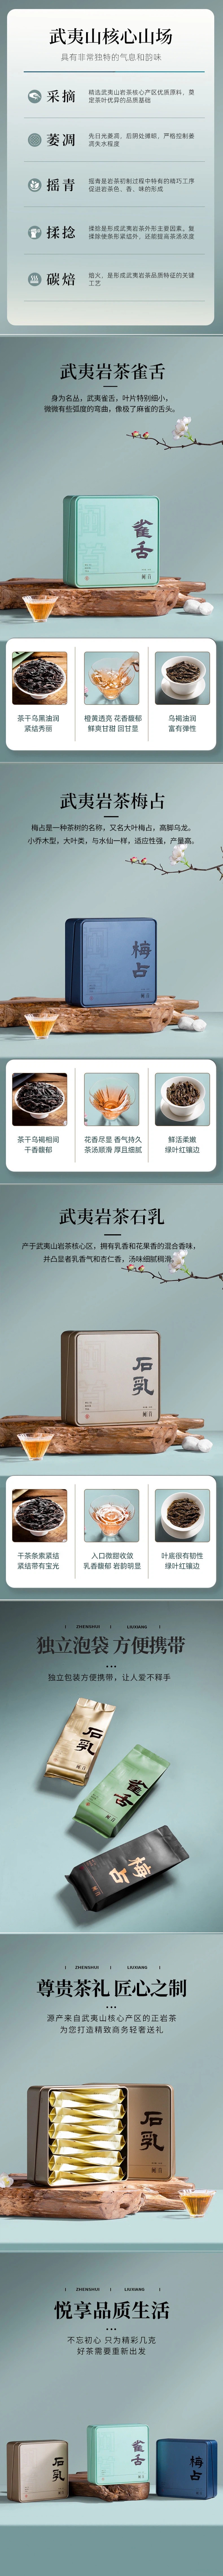 【中国直邮】武夷岩茶 石乳茶叶 102g/盒 2盒装